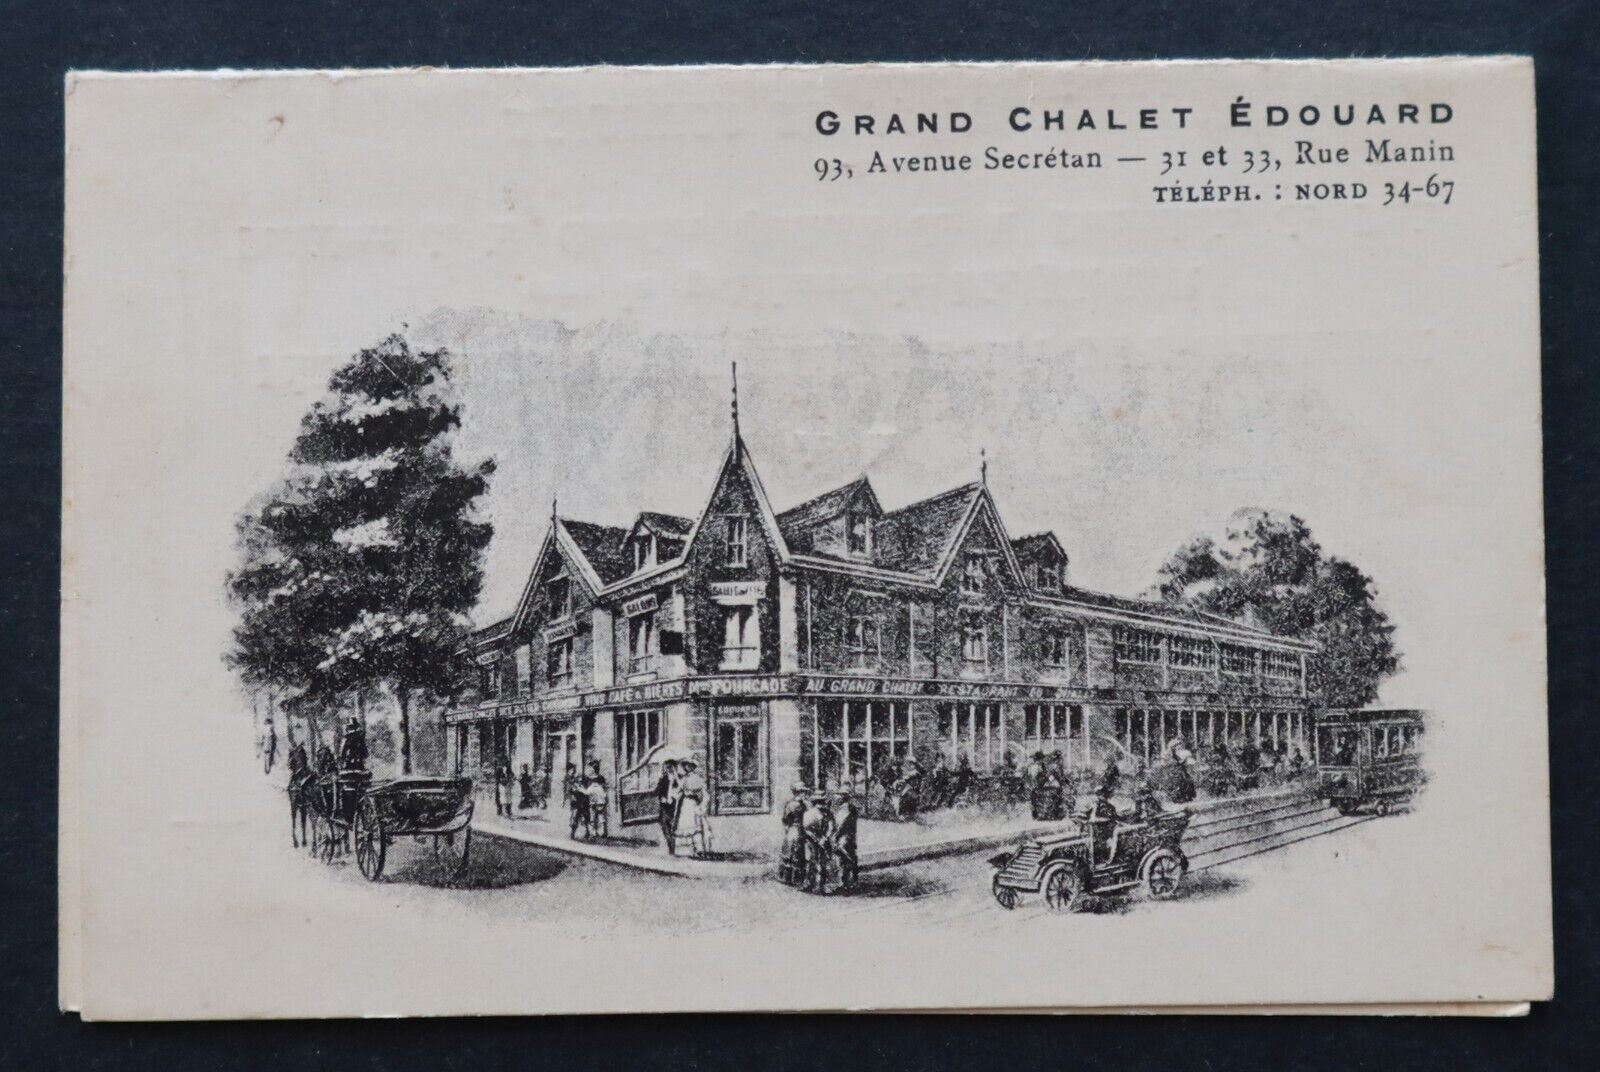 1929 Grand Chalet Edouard Federation Bourrellerie restaurant card menu